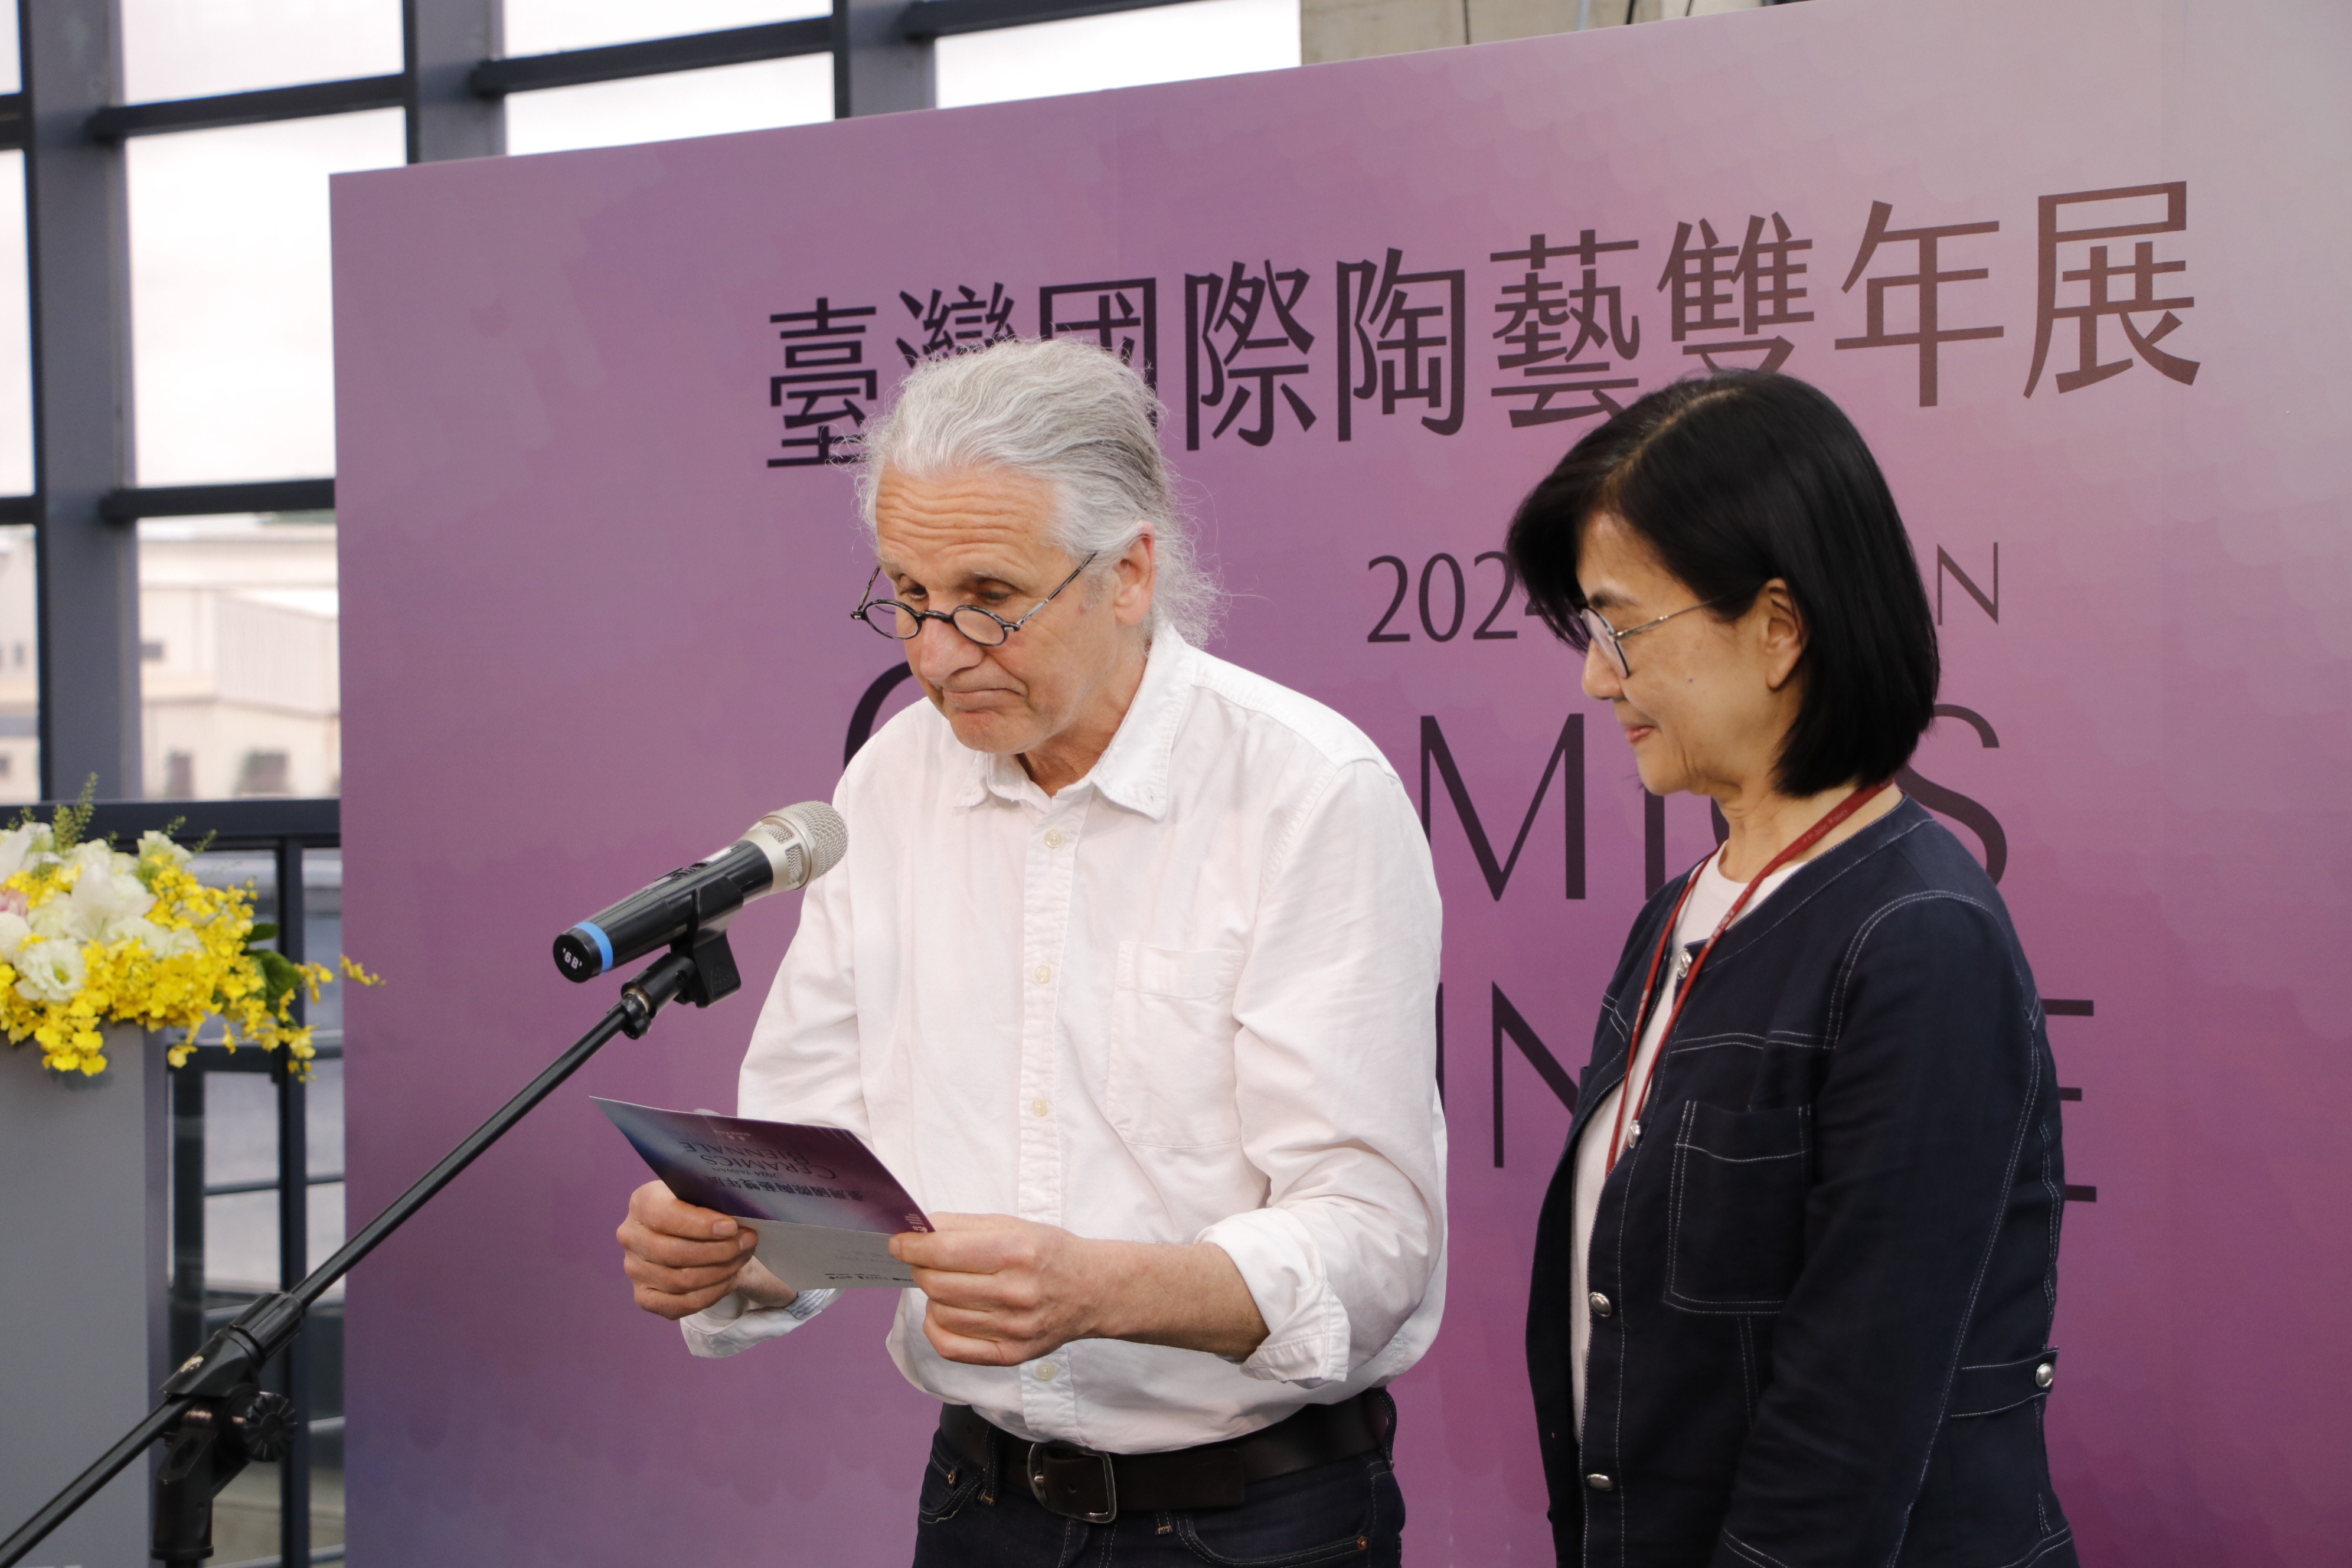 国际陶艺学会(IAC)主席Torbjørn Kvasbø(左)、文化局副局长长于玟(右)宣布「2024台湾国际陶艺双年展」首奖得主为来自日本的佐藤雅之 。记者李定宇／摄影